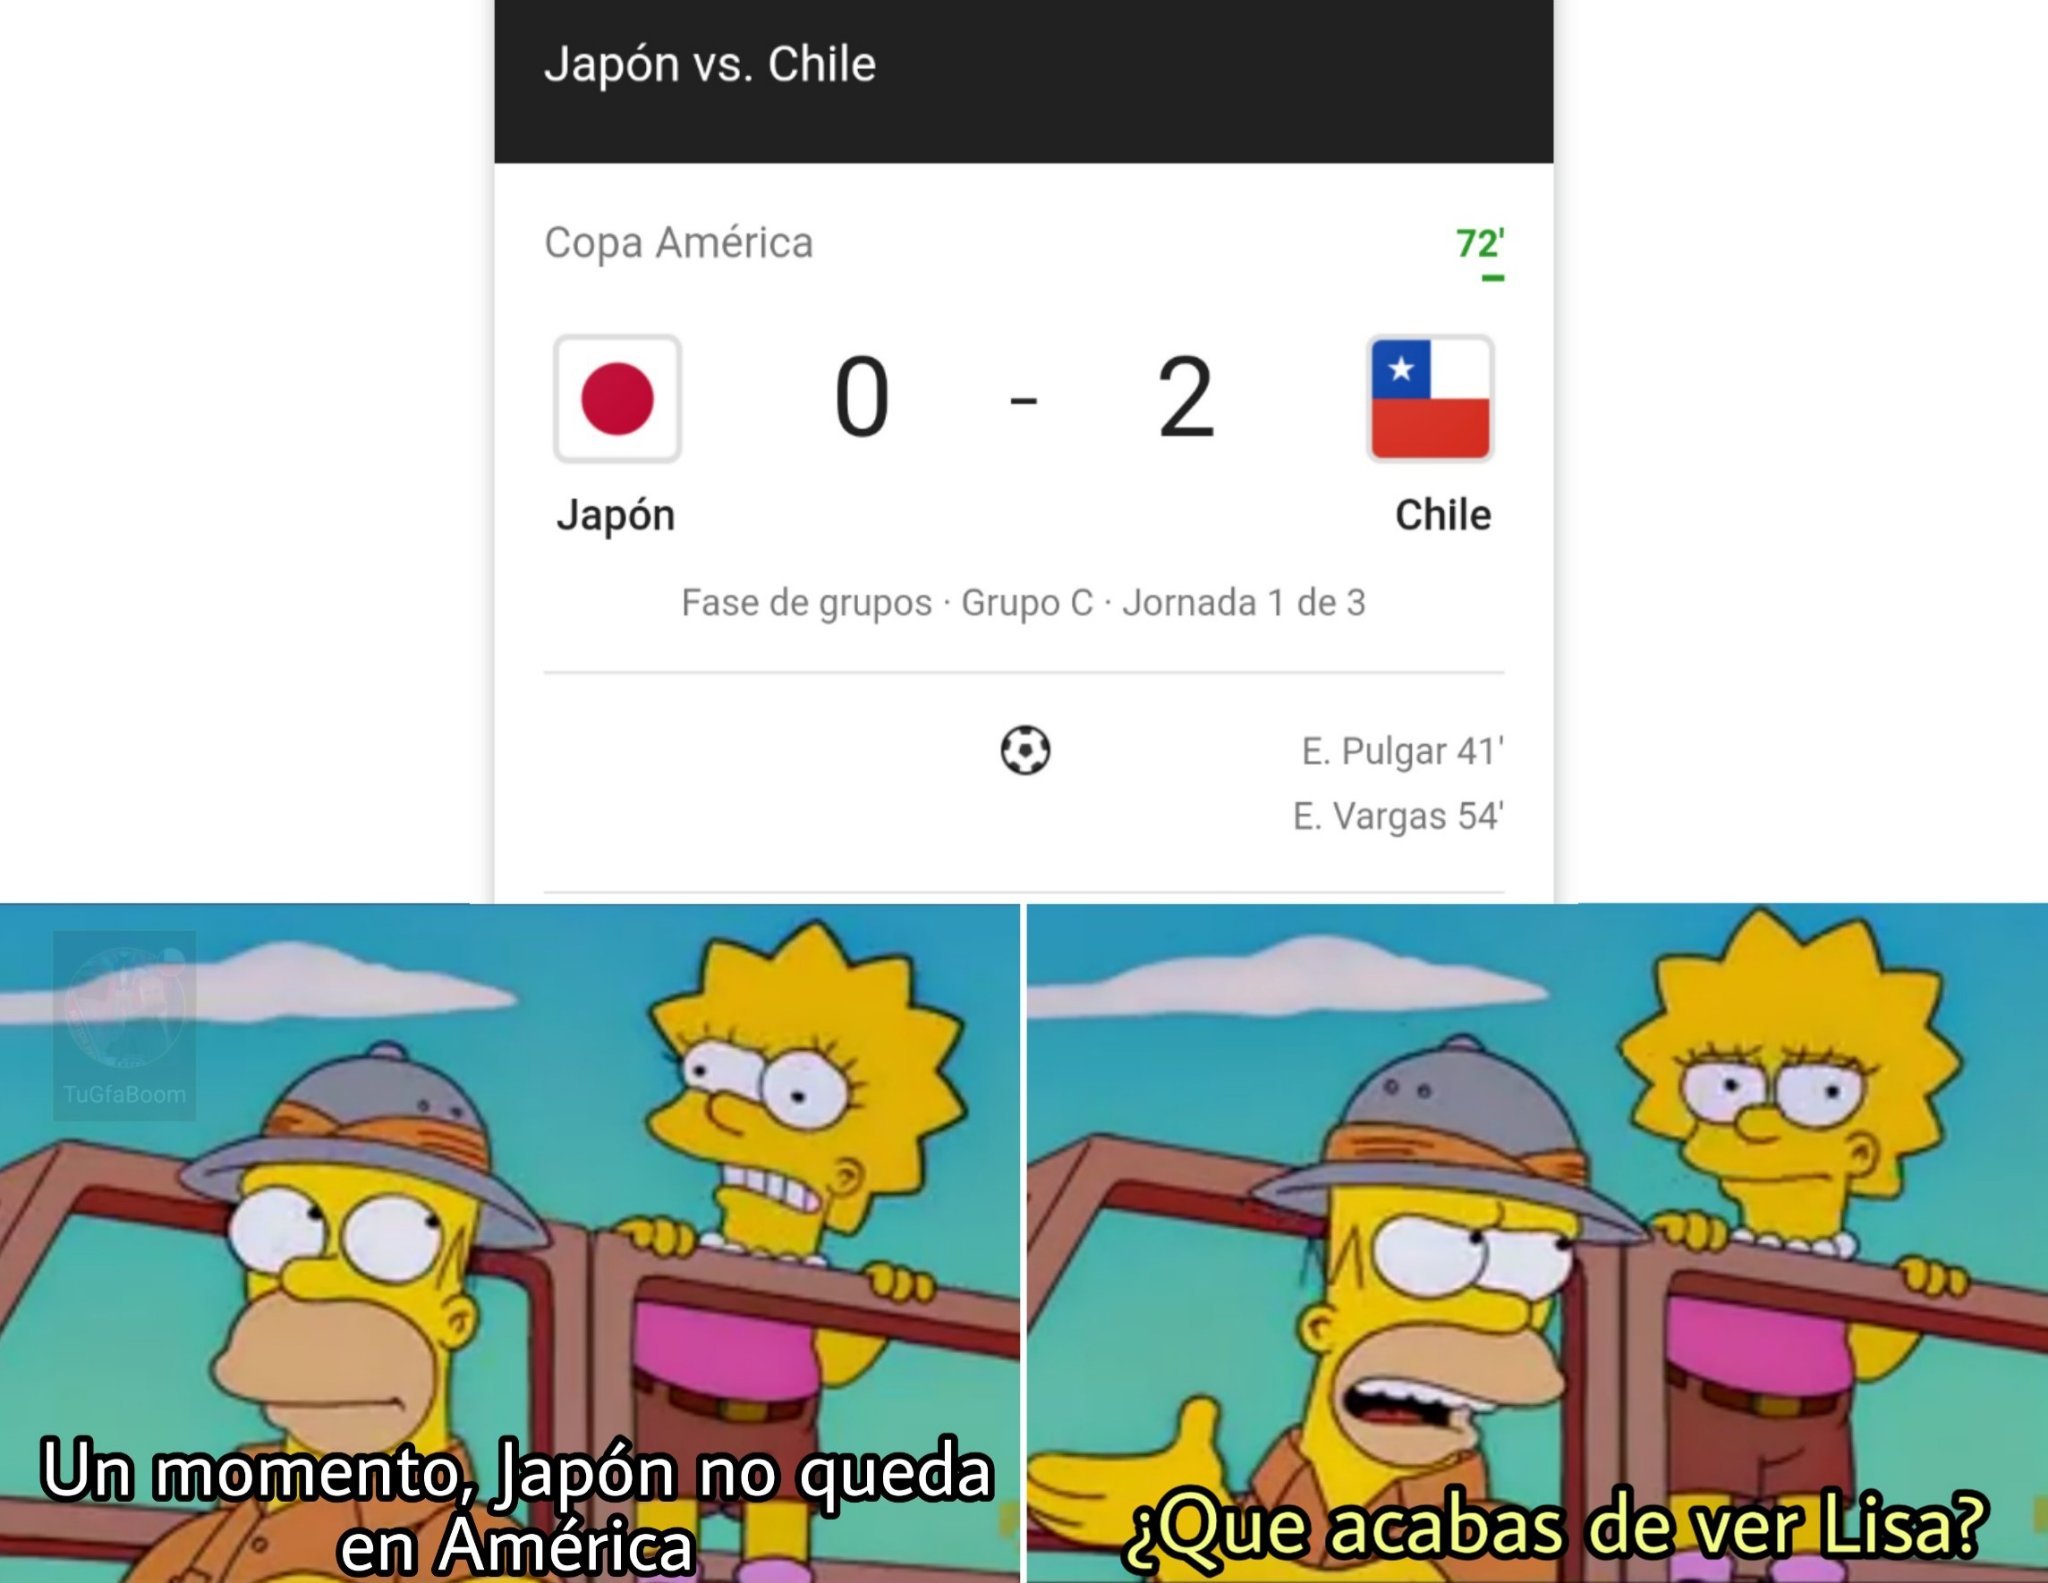 Copa América mode on - meme